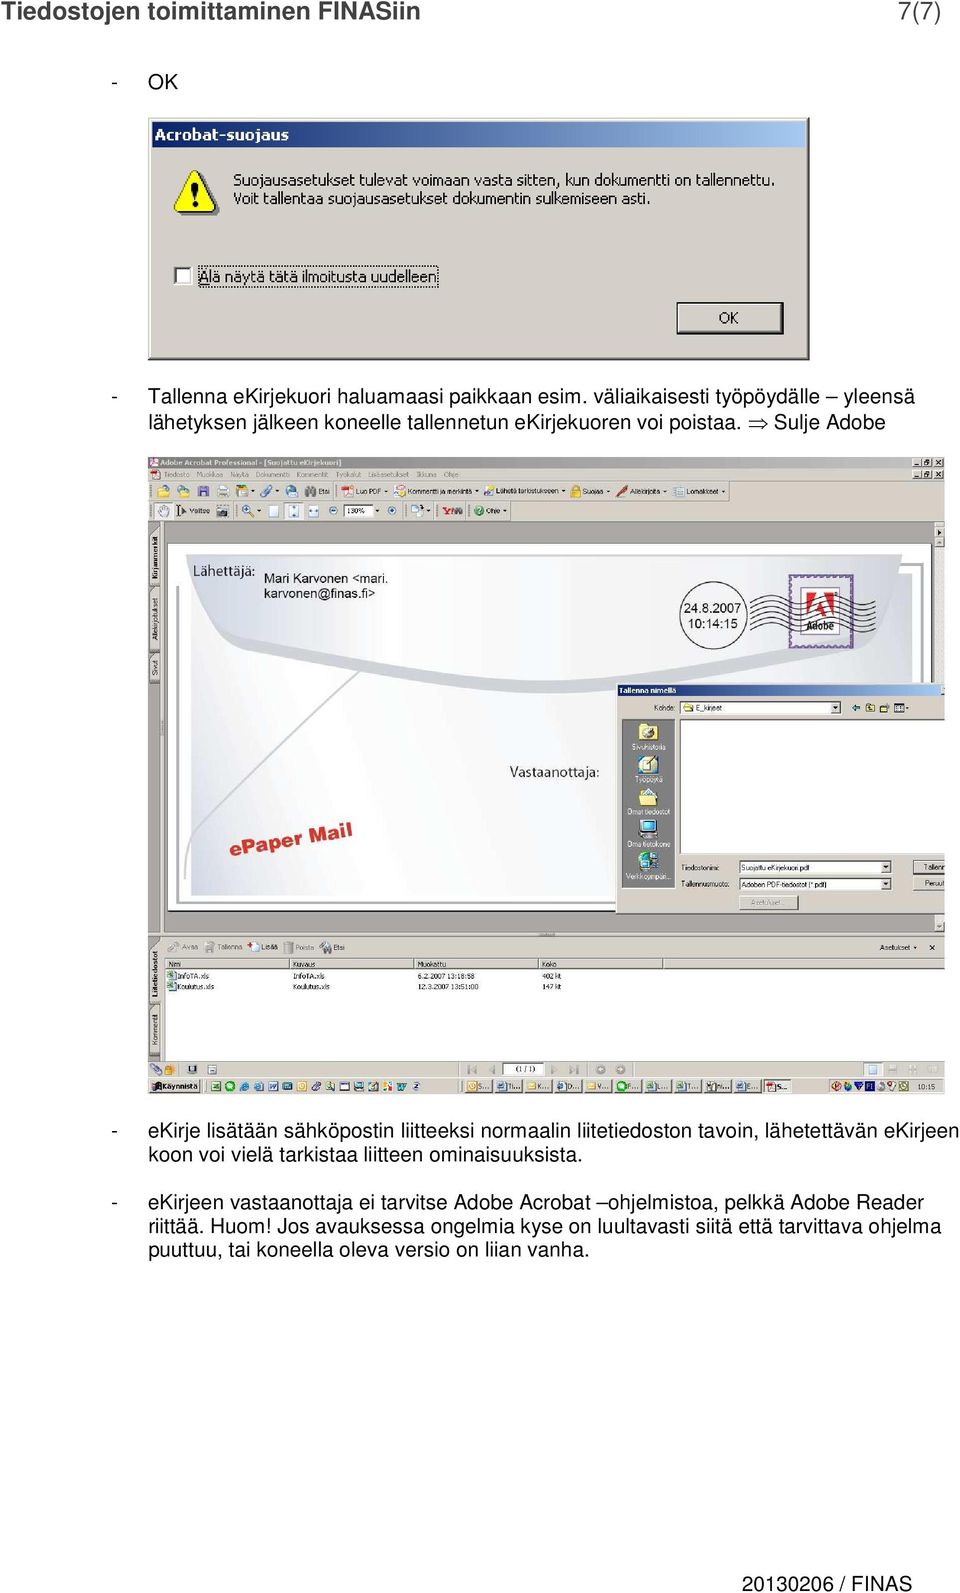 Sulje Adobe - ekirje lisätään sähköpostin liitteeksi normaalin liitetiedoston tavoin, lähetettävän ekirjeen koon voi vielä tarkistaa liitteen